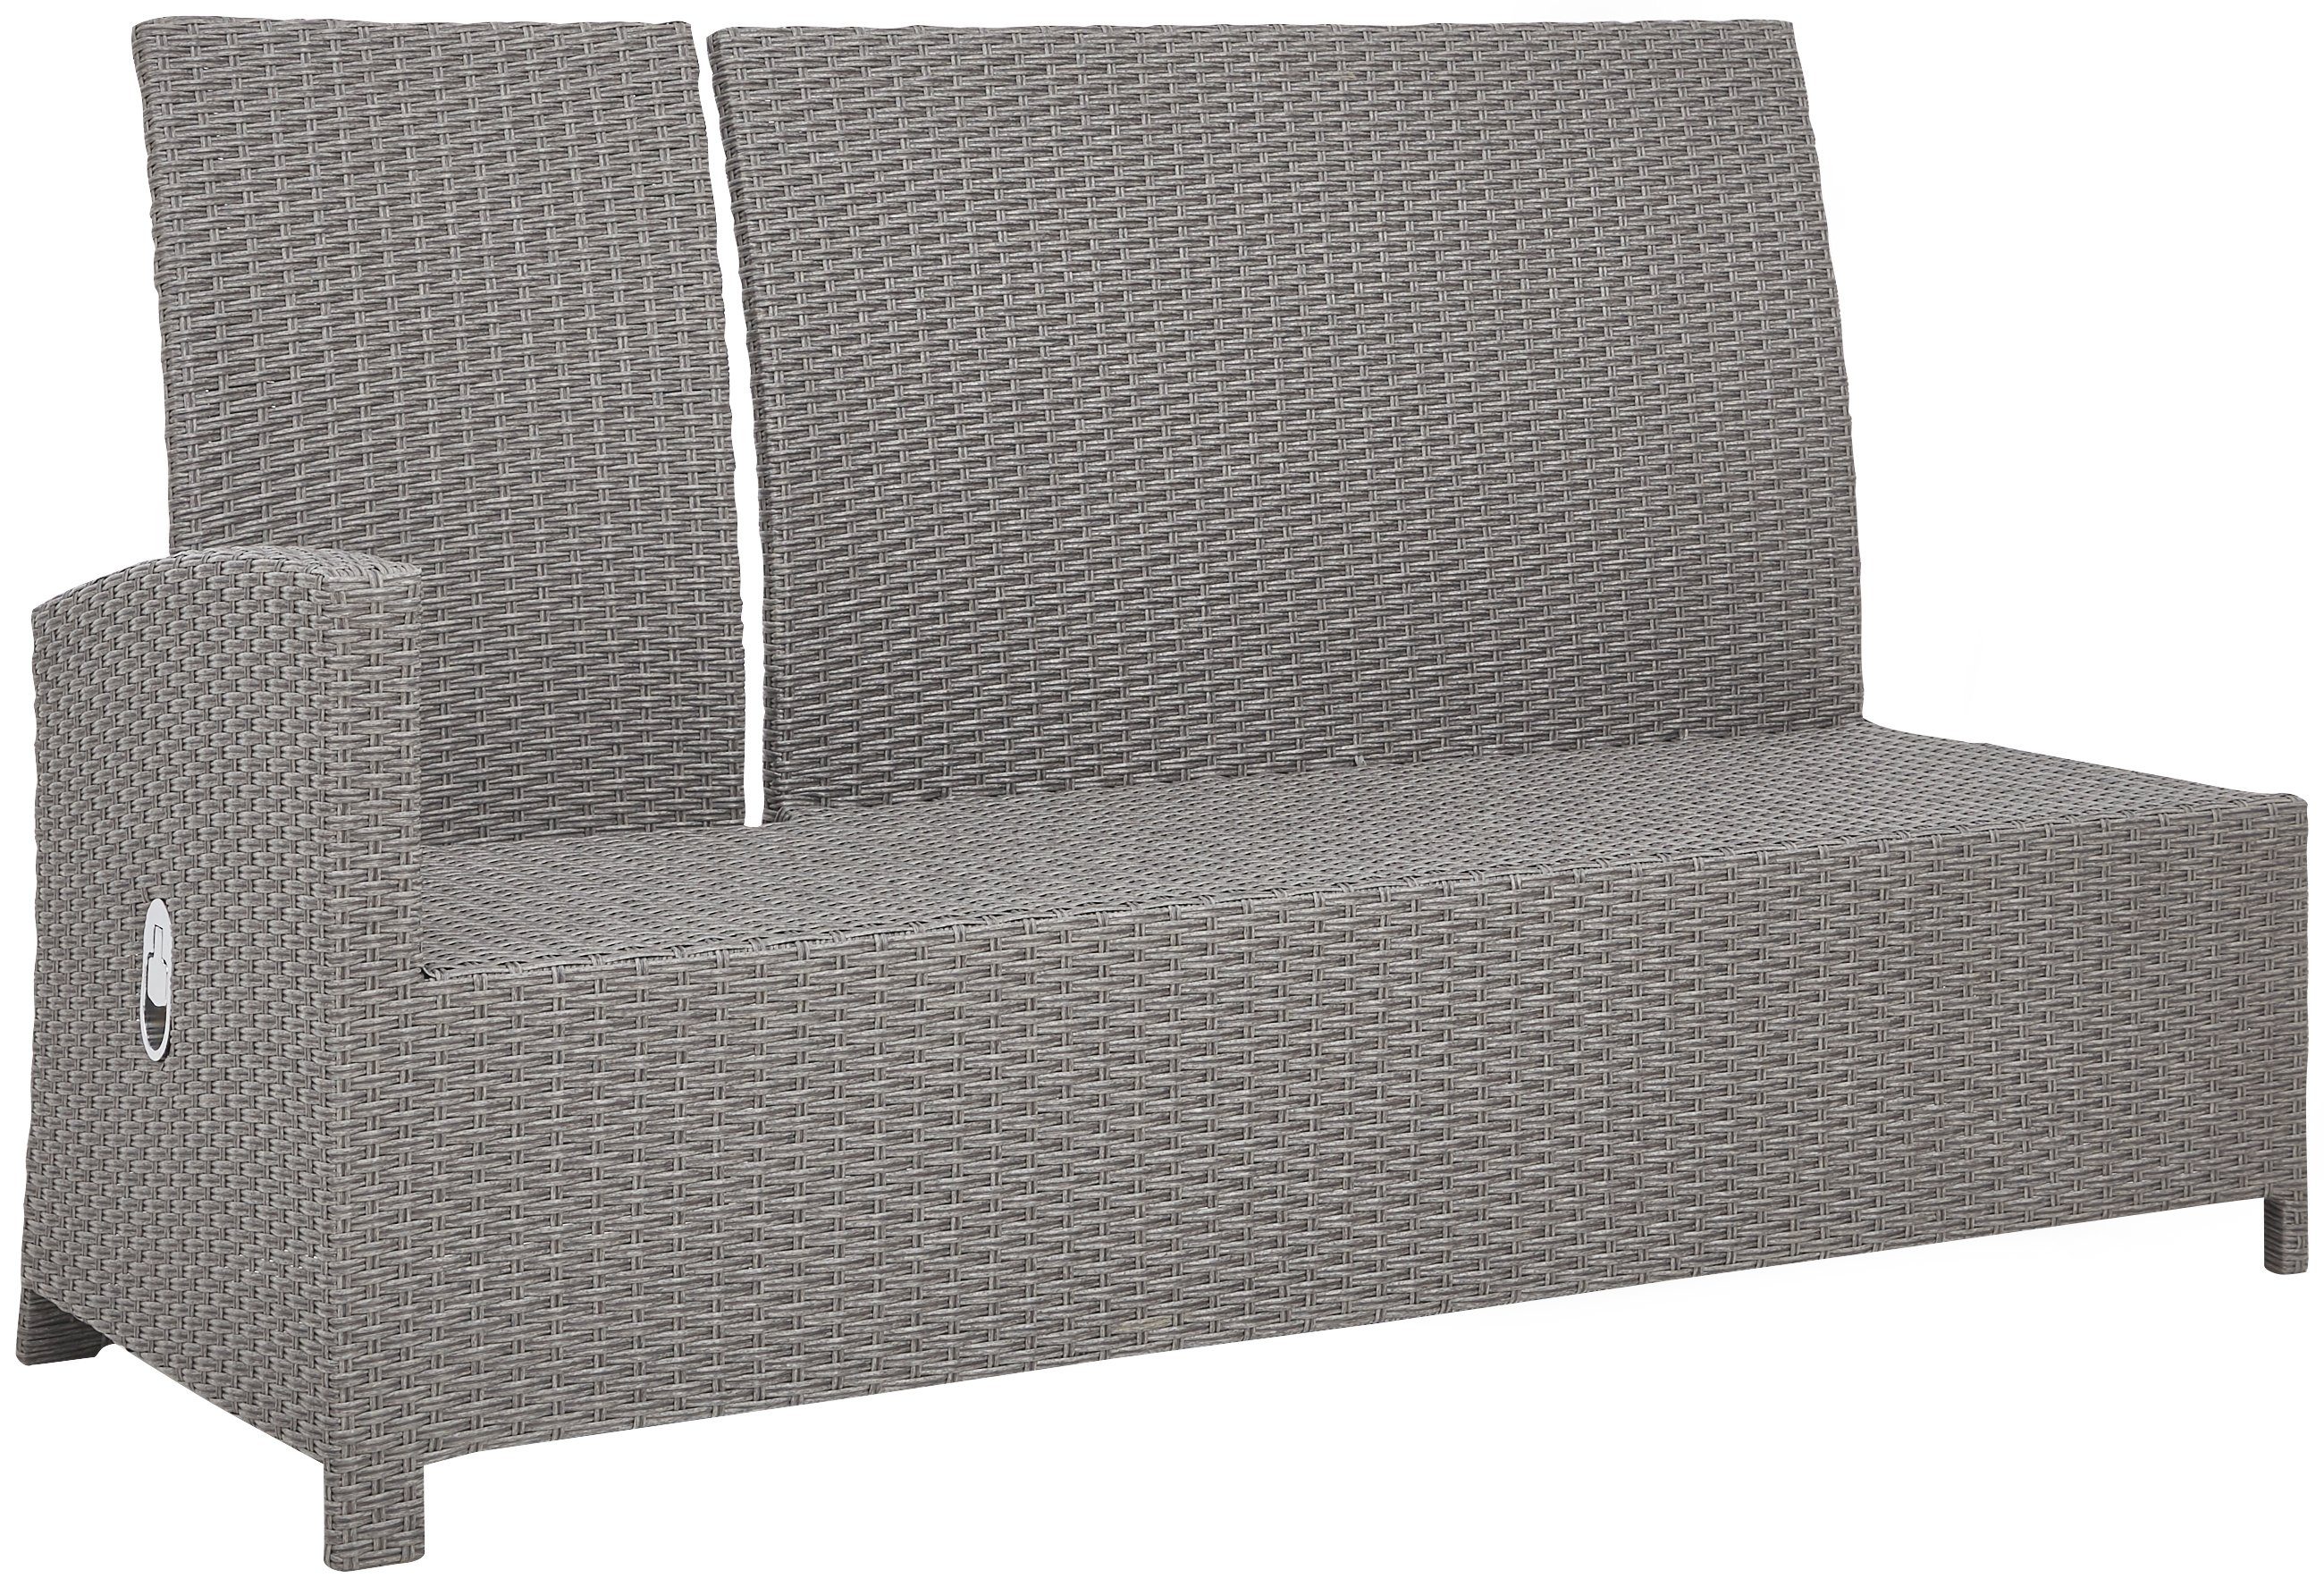 hellgrau inkl. Sitzbank, KONIFERA Alu/Polyrattan Auflagen, 145x80 cm, Gartenlounge-Set mit Hocker, Tisch (16-tlg), Monaco,